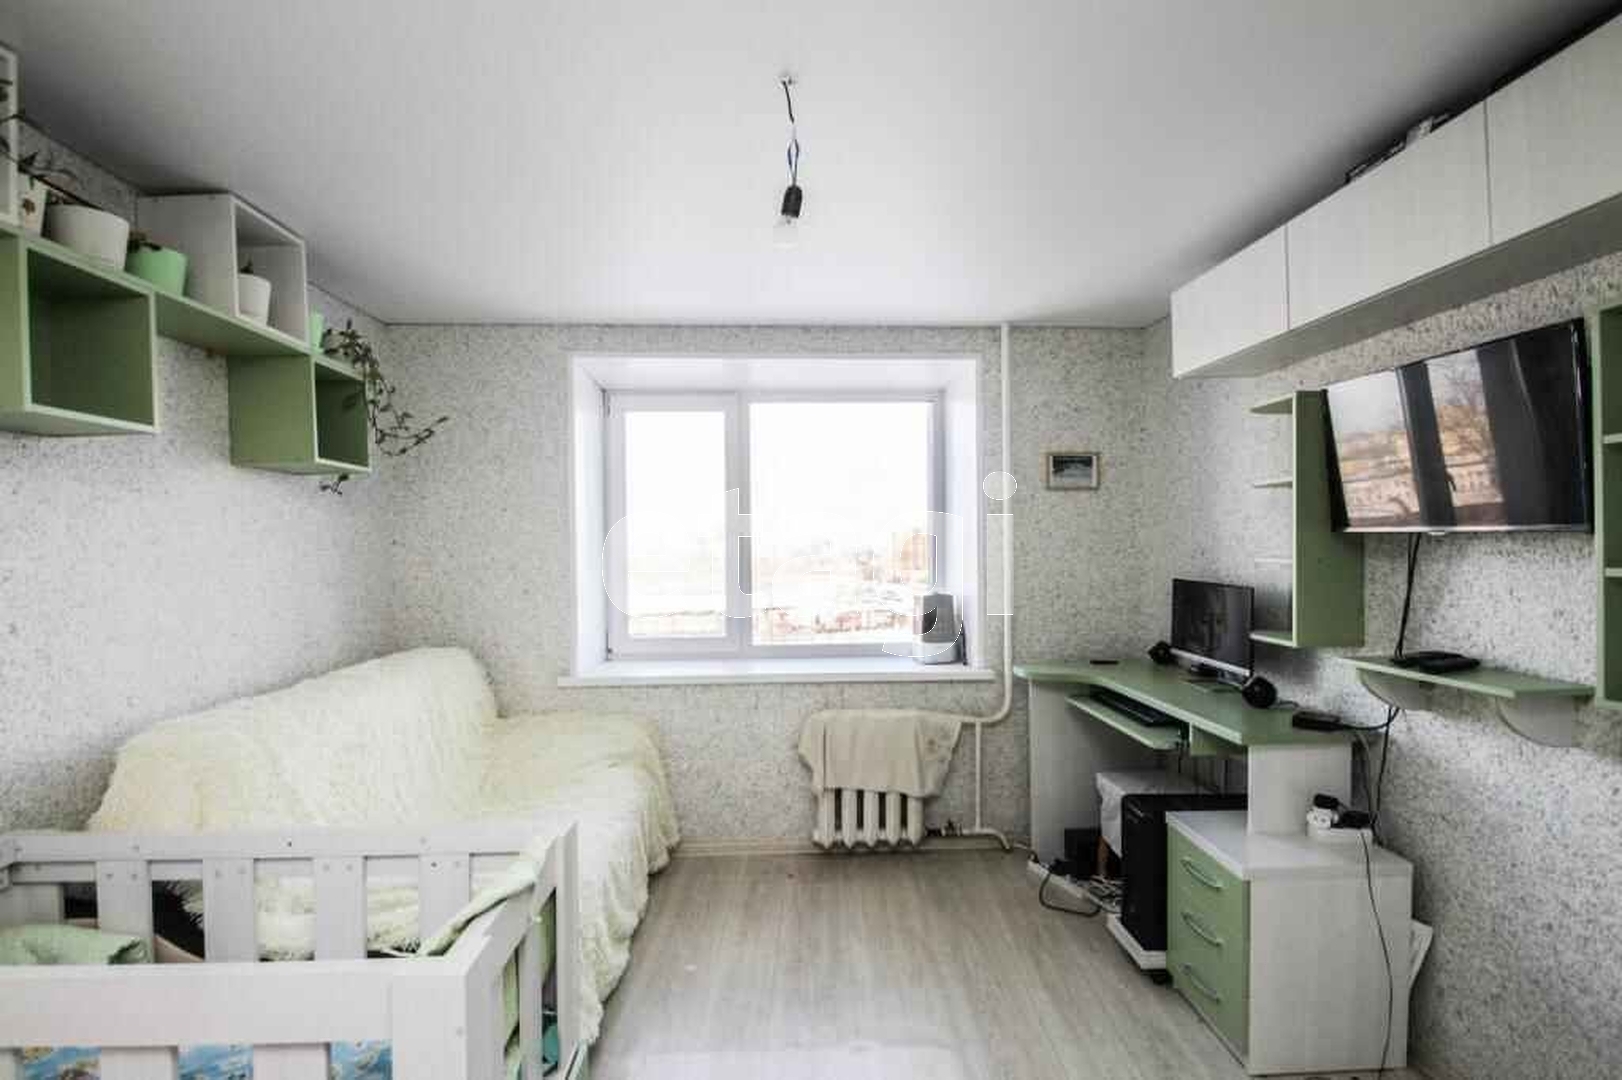 А эта стильная комнатка в 13 квадратов продается на Маяке уже за 870 тысяч рублей